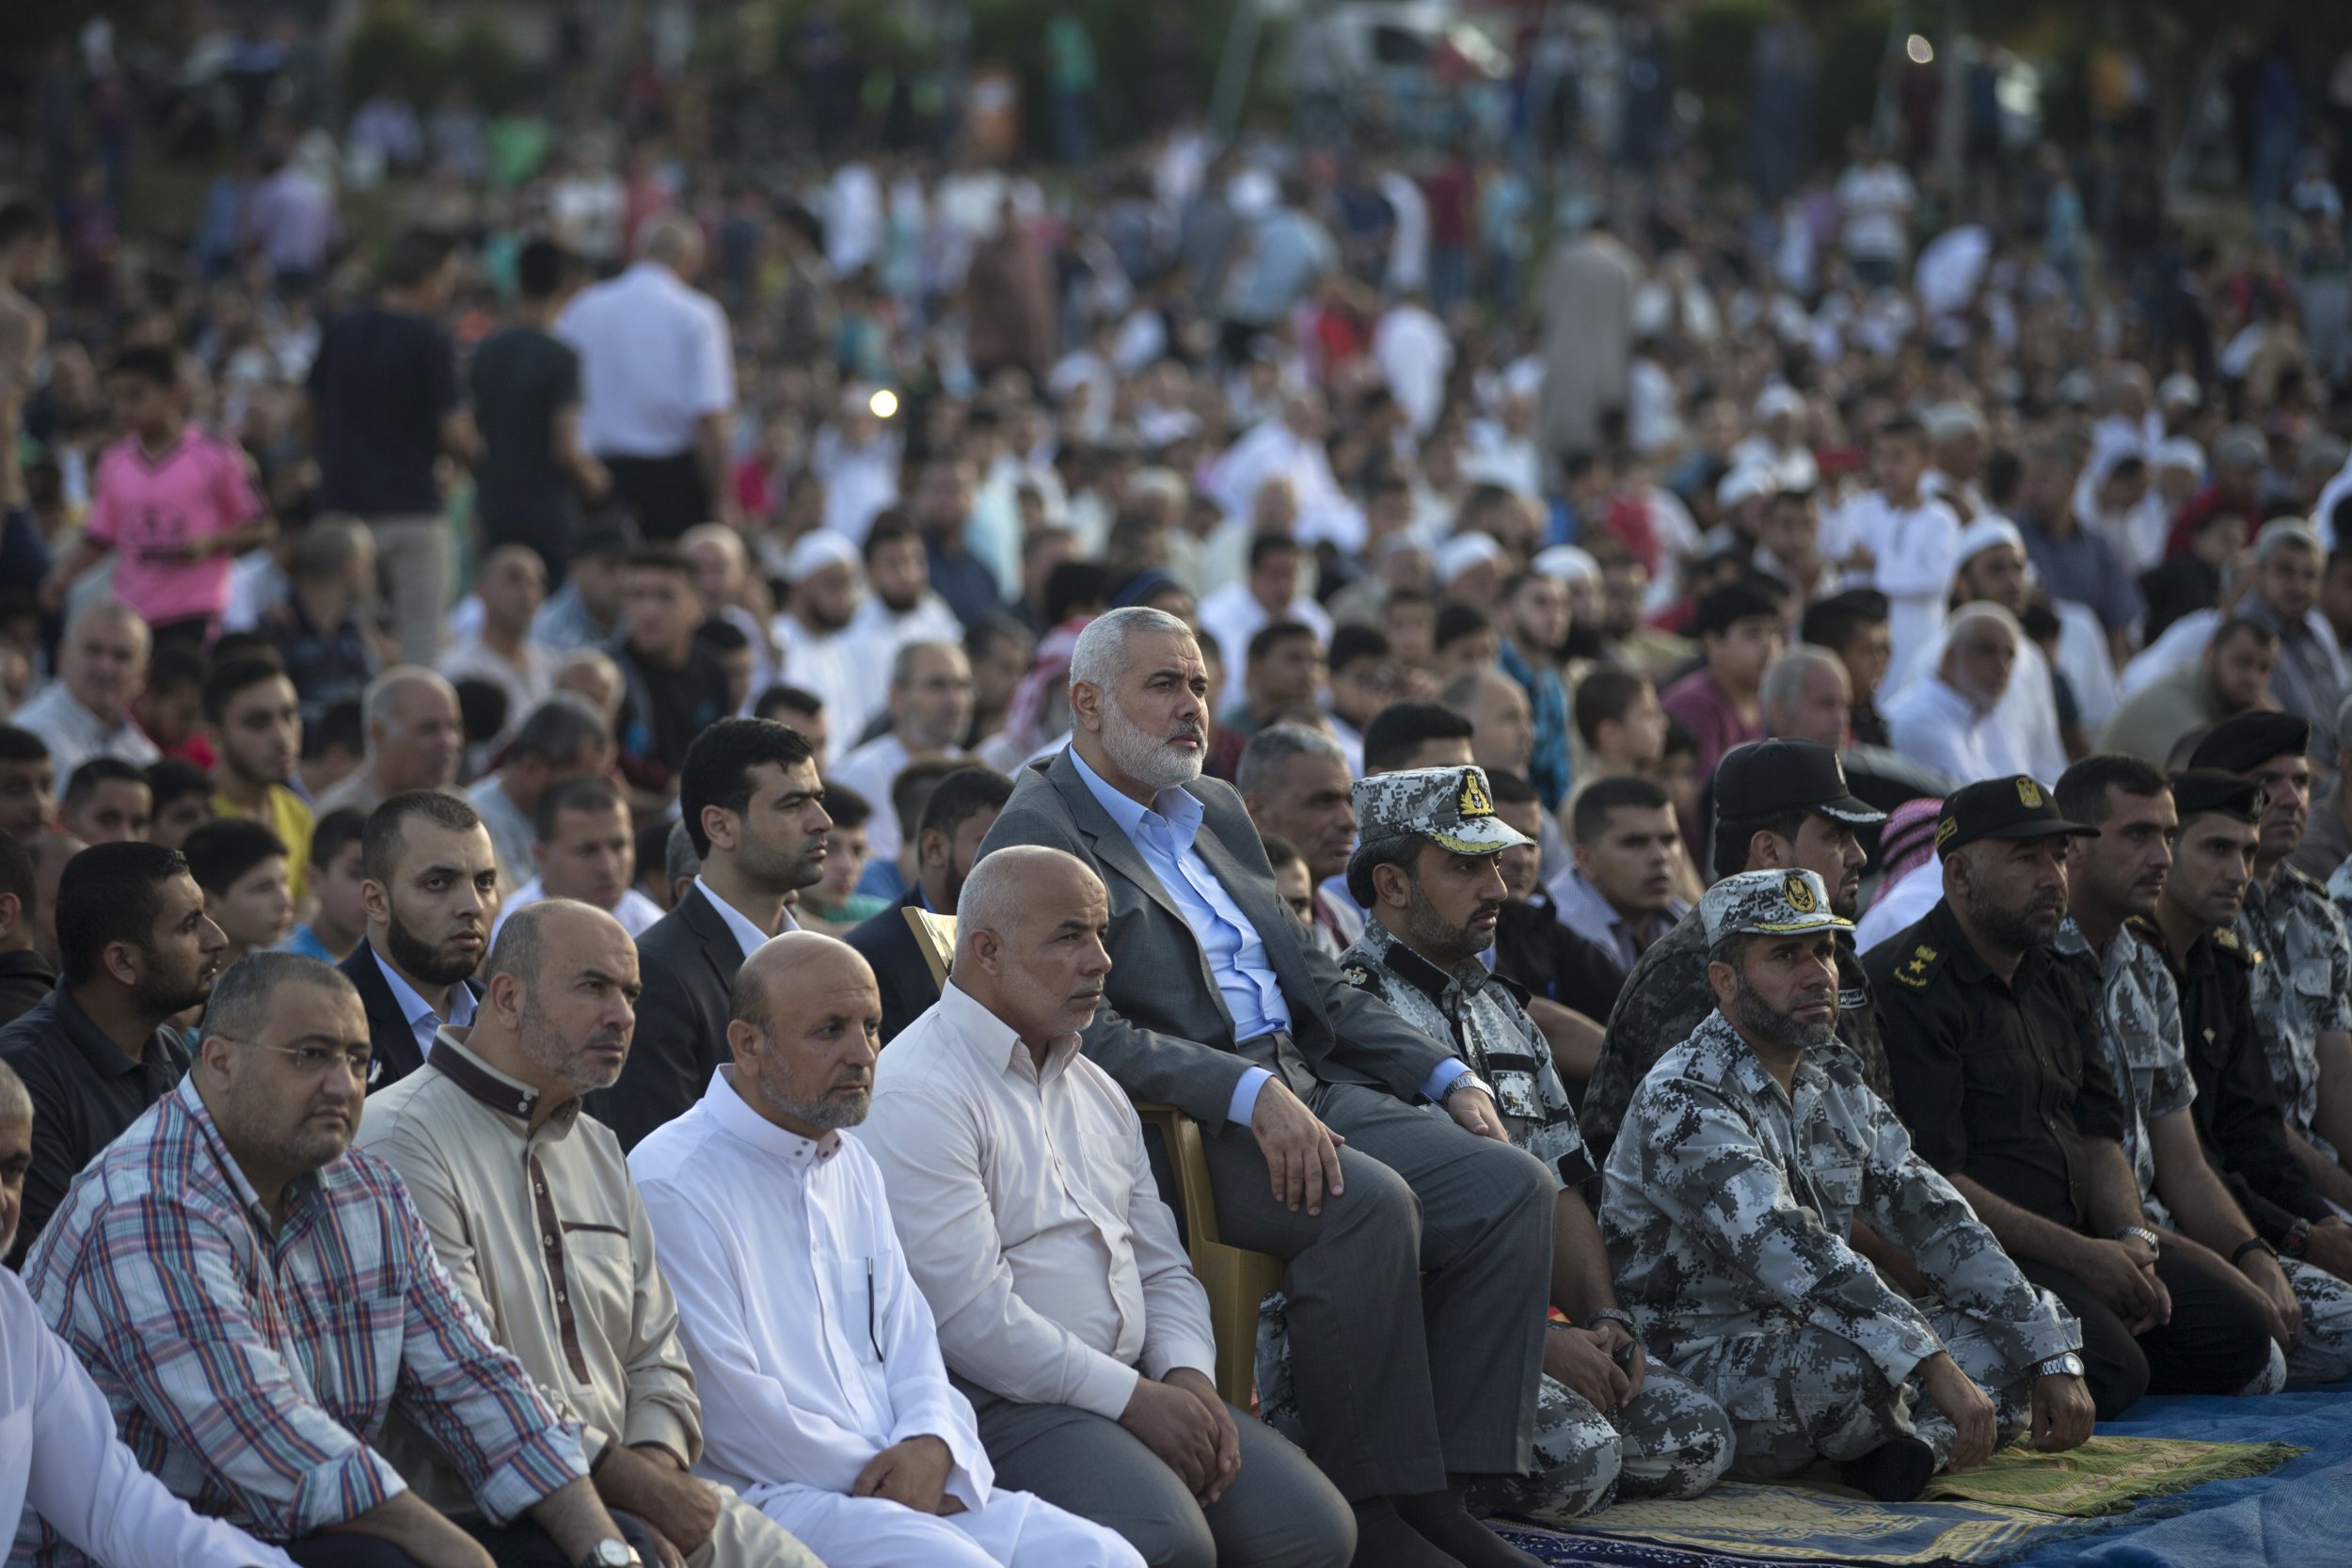 Hamas leader Haniyeh